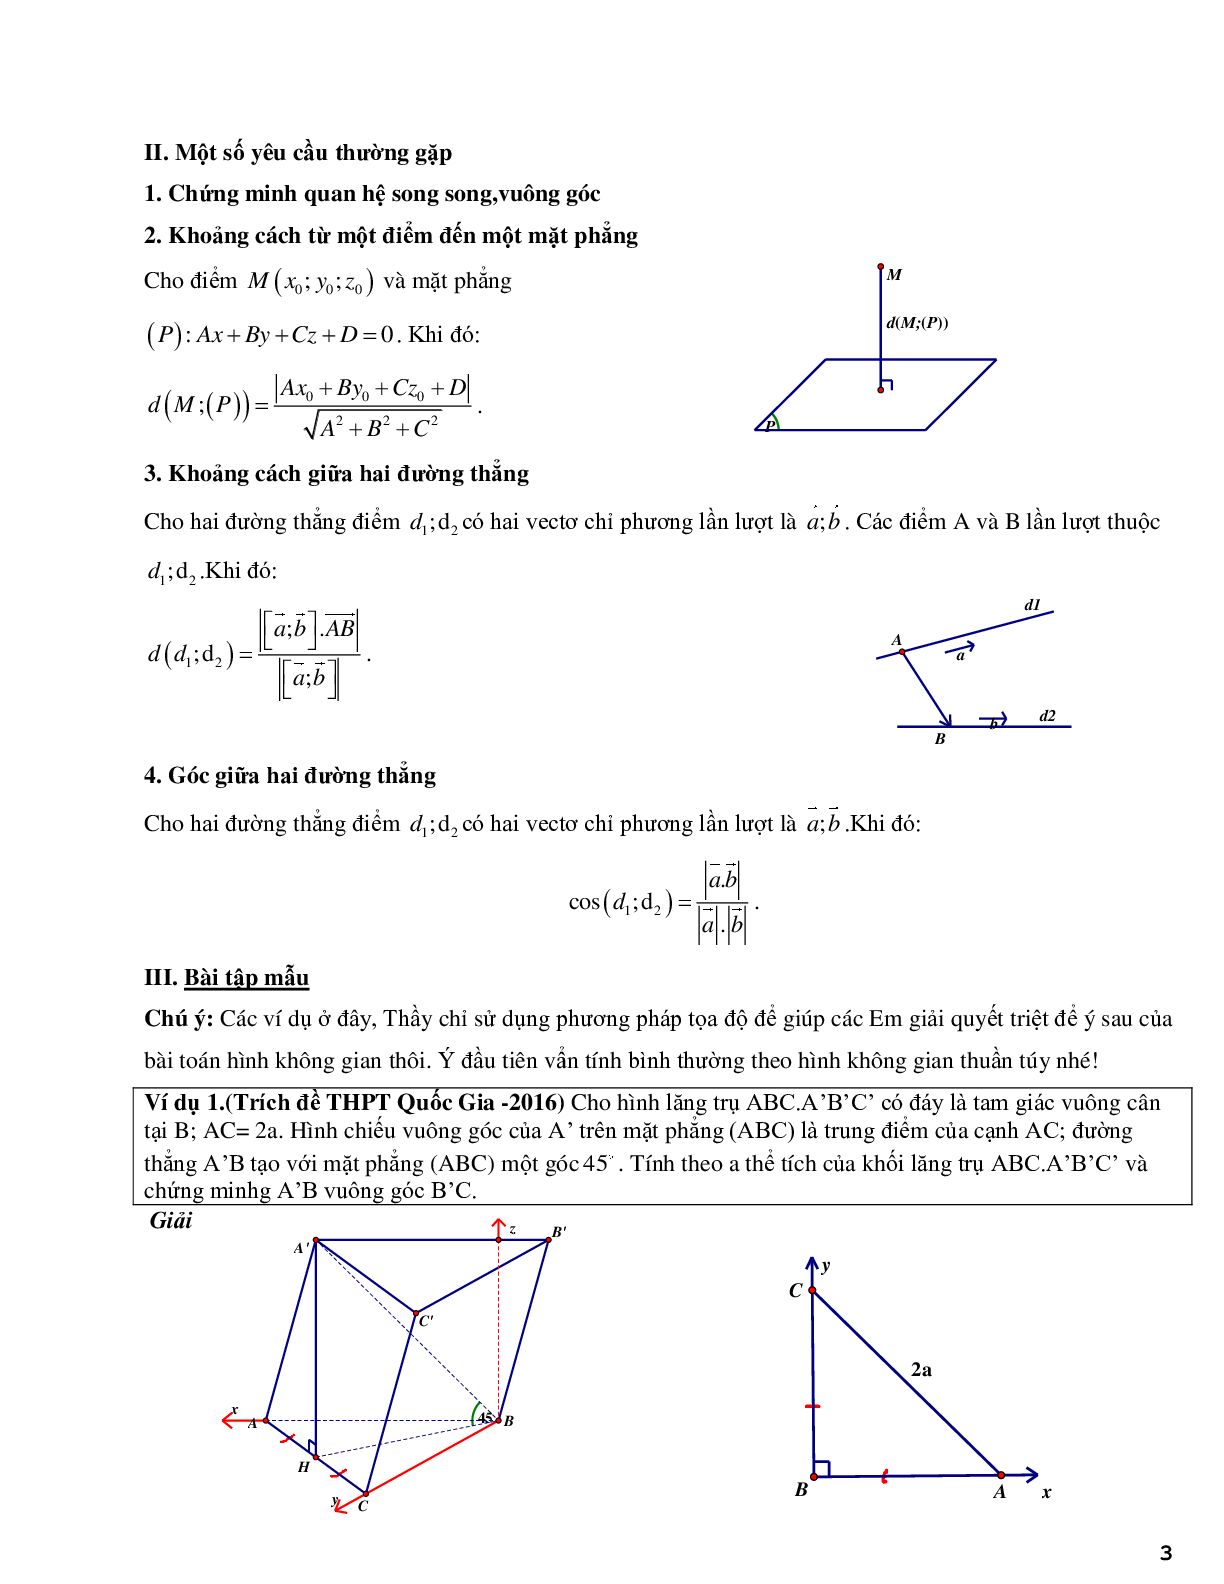 Phương pháp tọa độ hóa bài toán hình học không gian - phần 2 (trang 3)